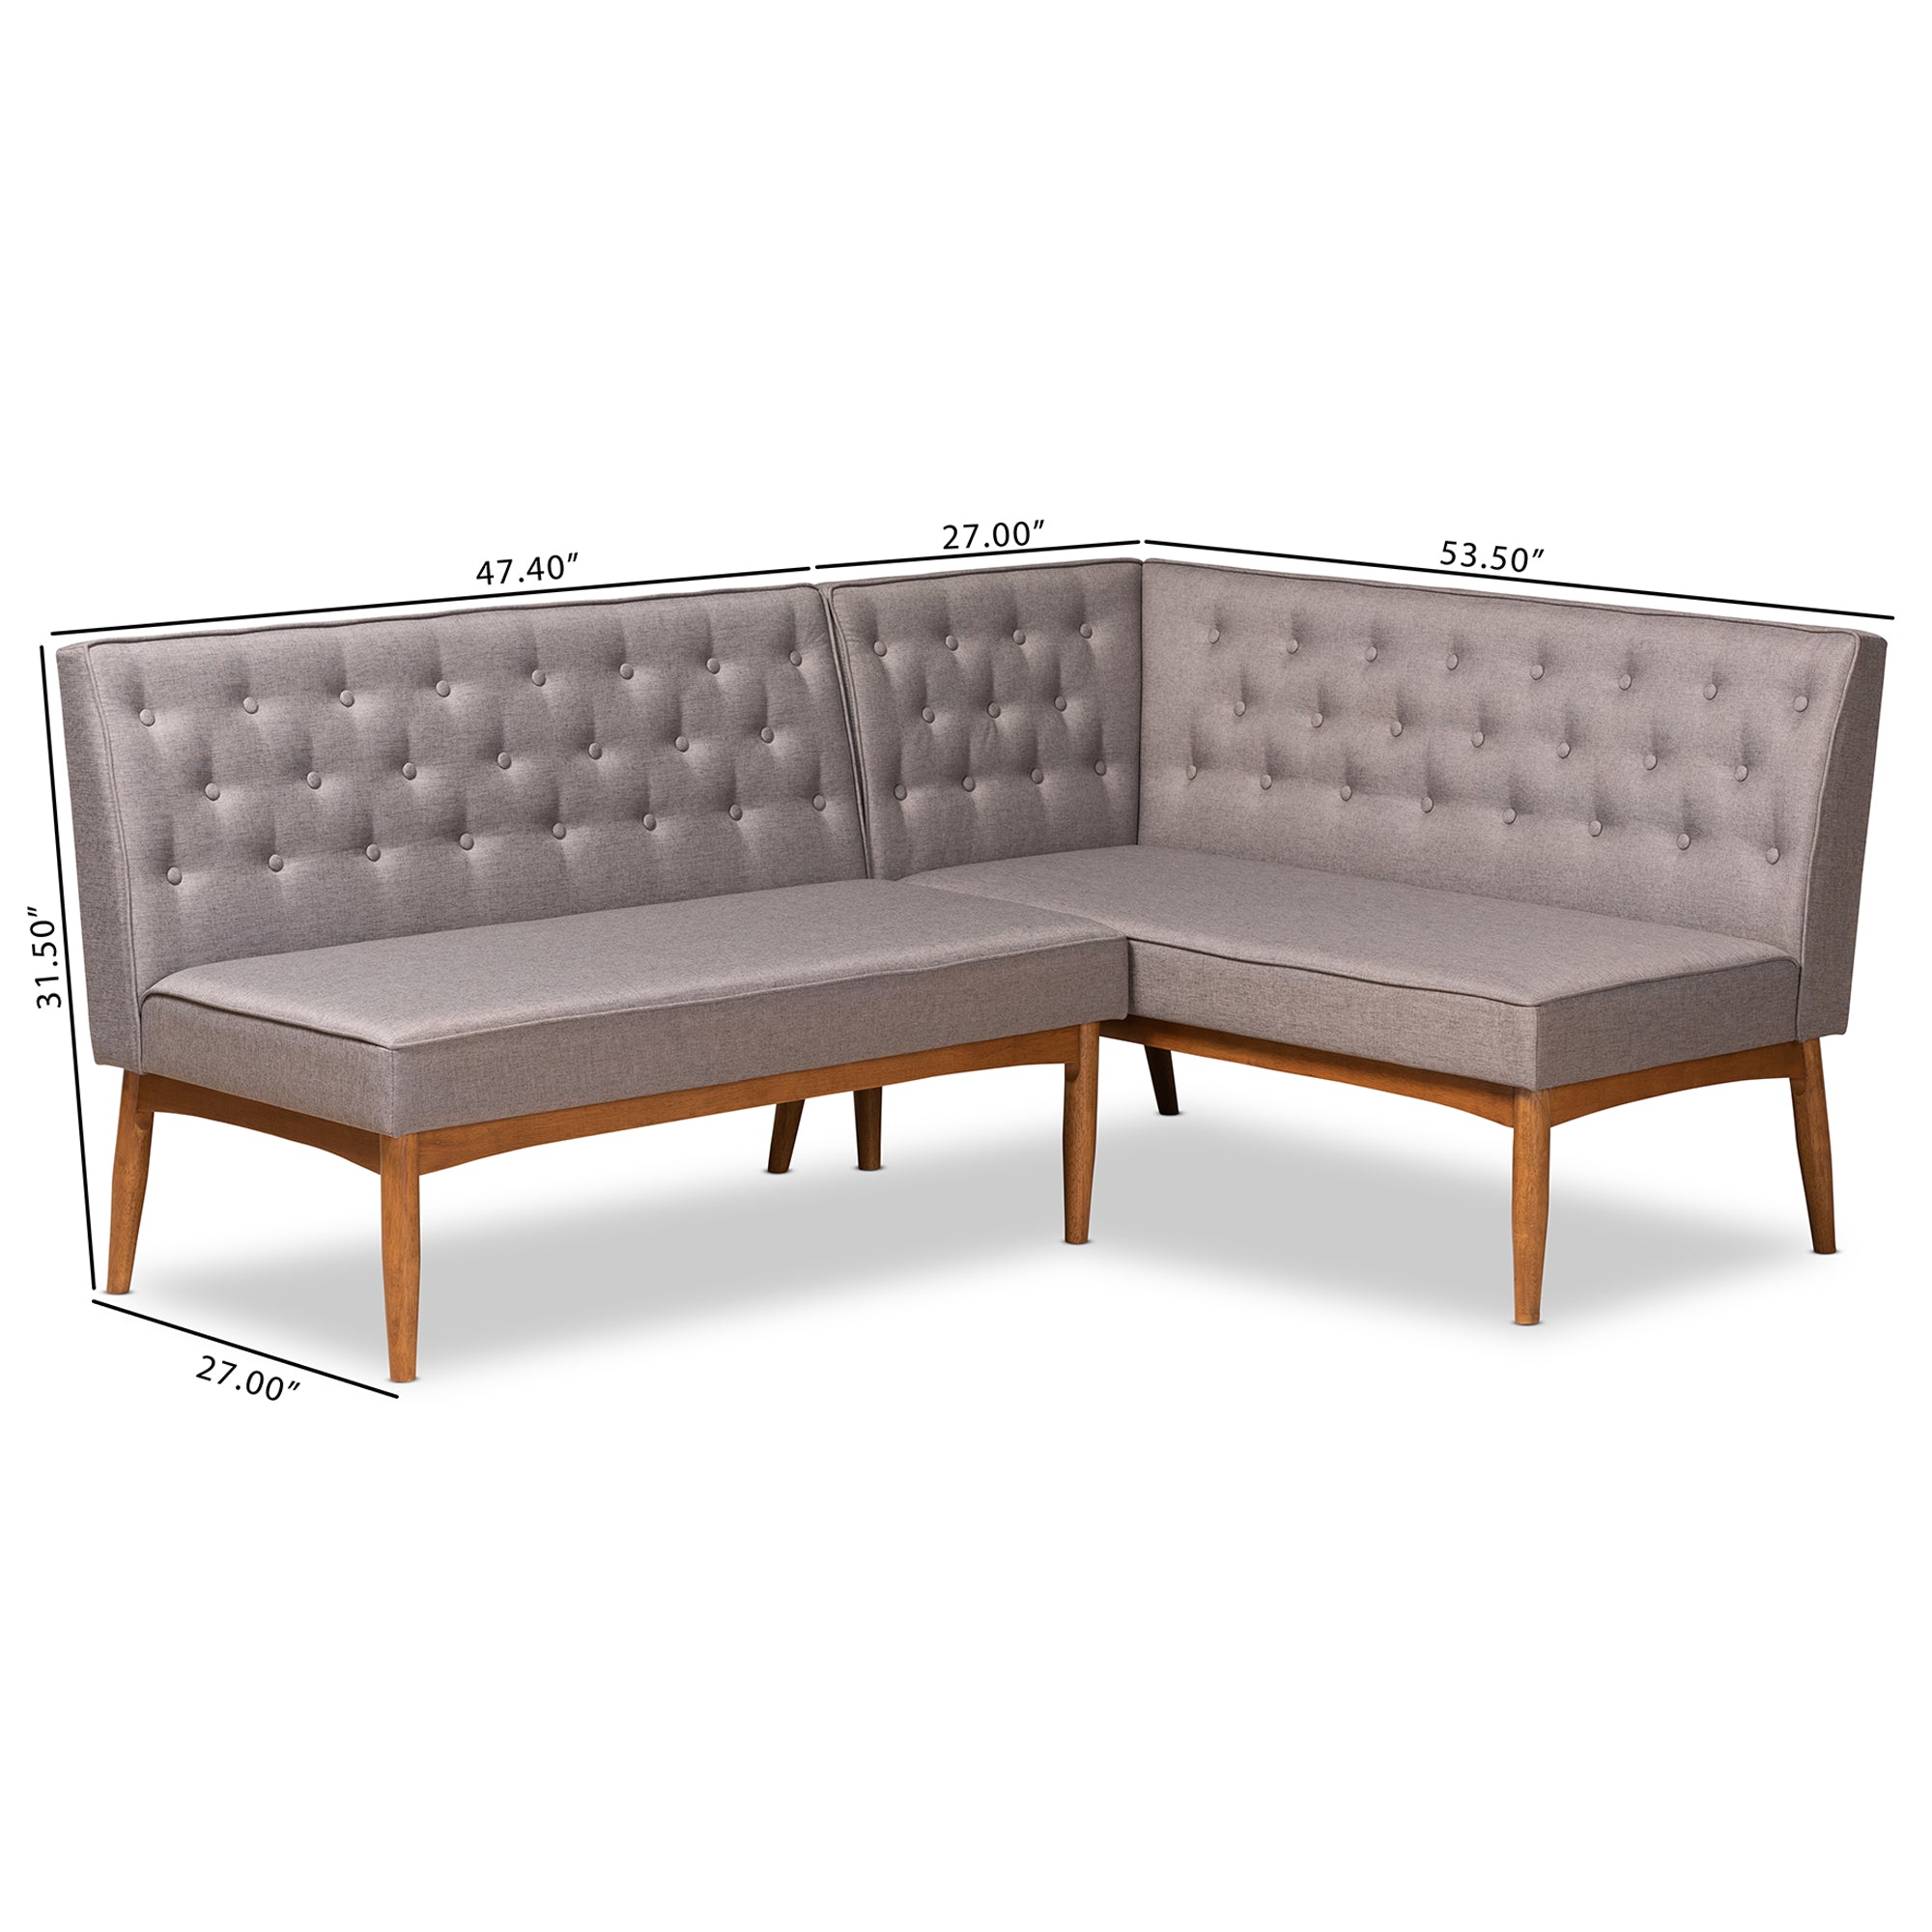 Riordan Mid-Century Dining Sofa Bench-Dining Sofa Bench-Baxton Studio - WI-Wall2Wall Furnishings